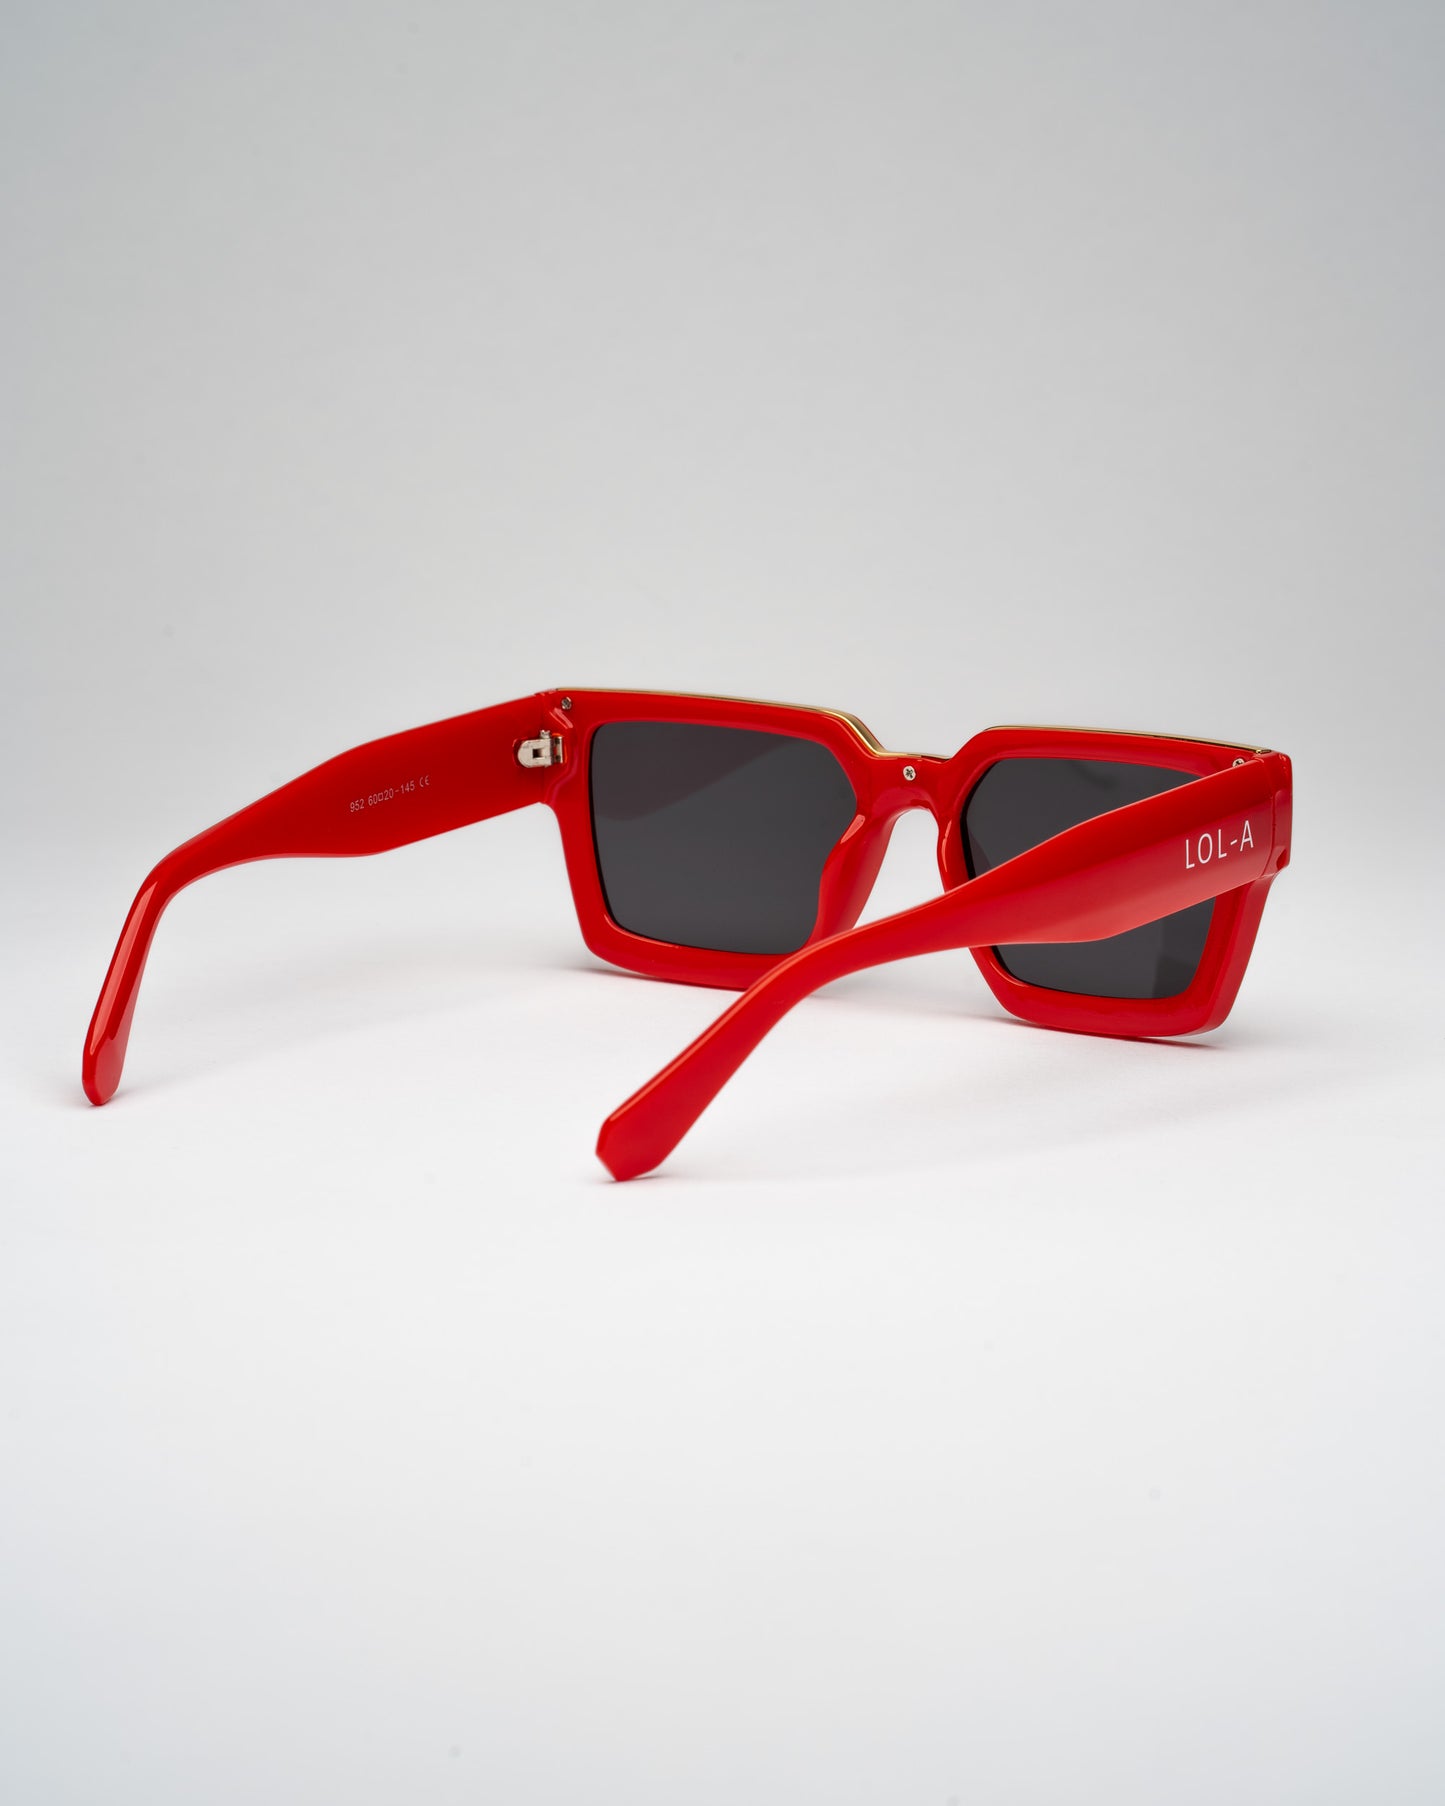 “RED DIVA" Sunglasses- SIGNATURE